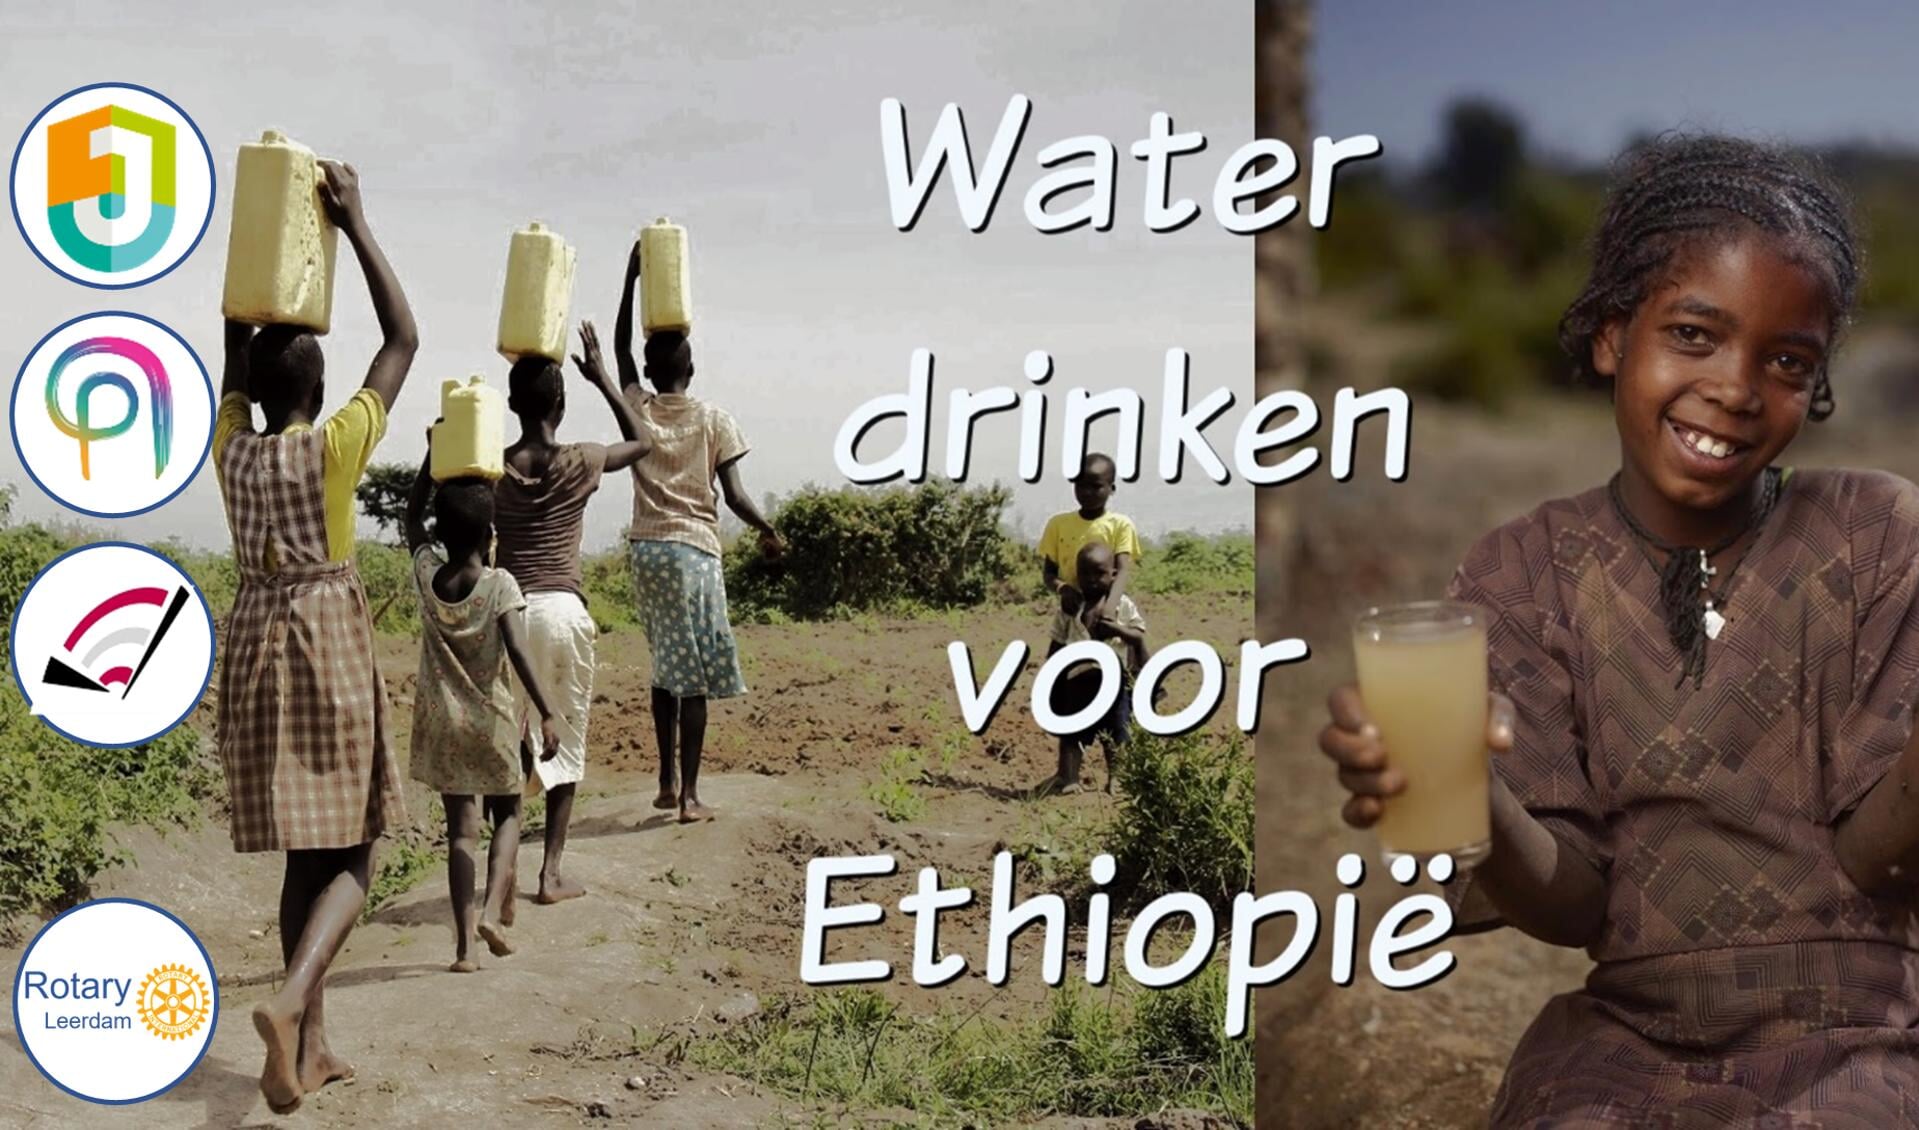 Kinderen in Ethiopie halen drinkwater. Meisje met vuil en gefilterd water. Logo's van de 3 deelnemende scholen en Rotary logo.